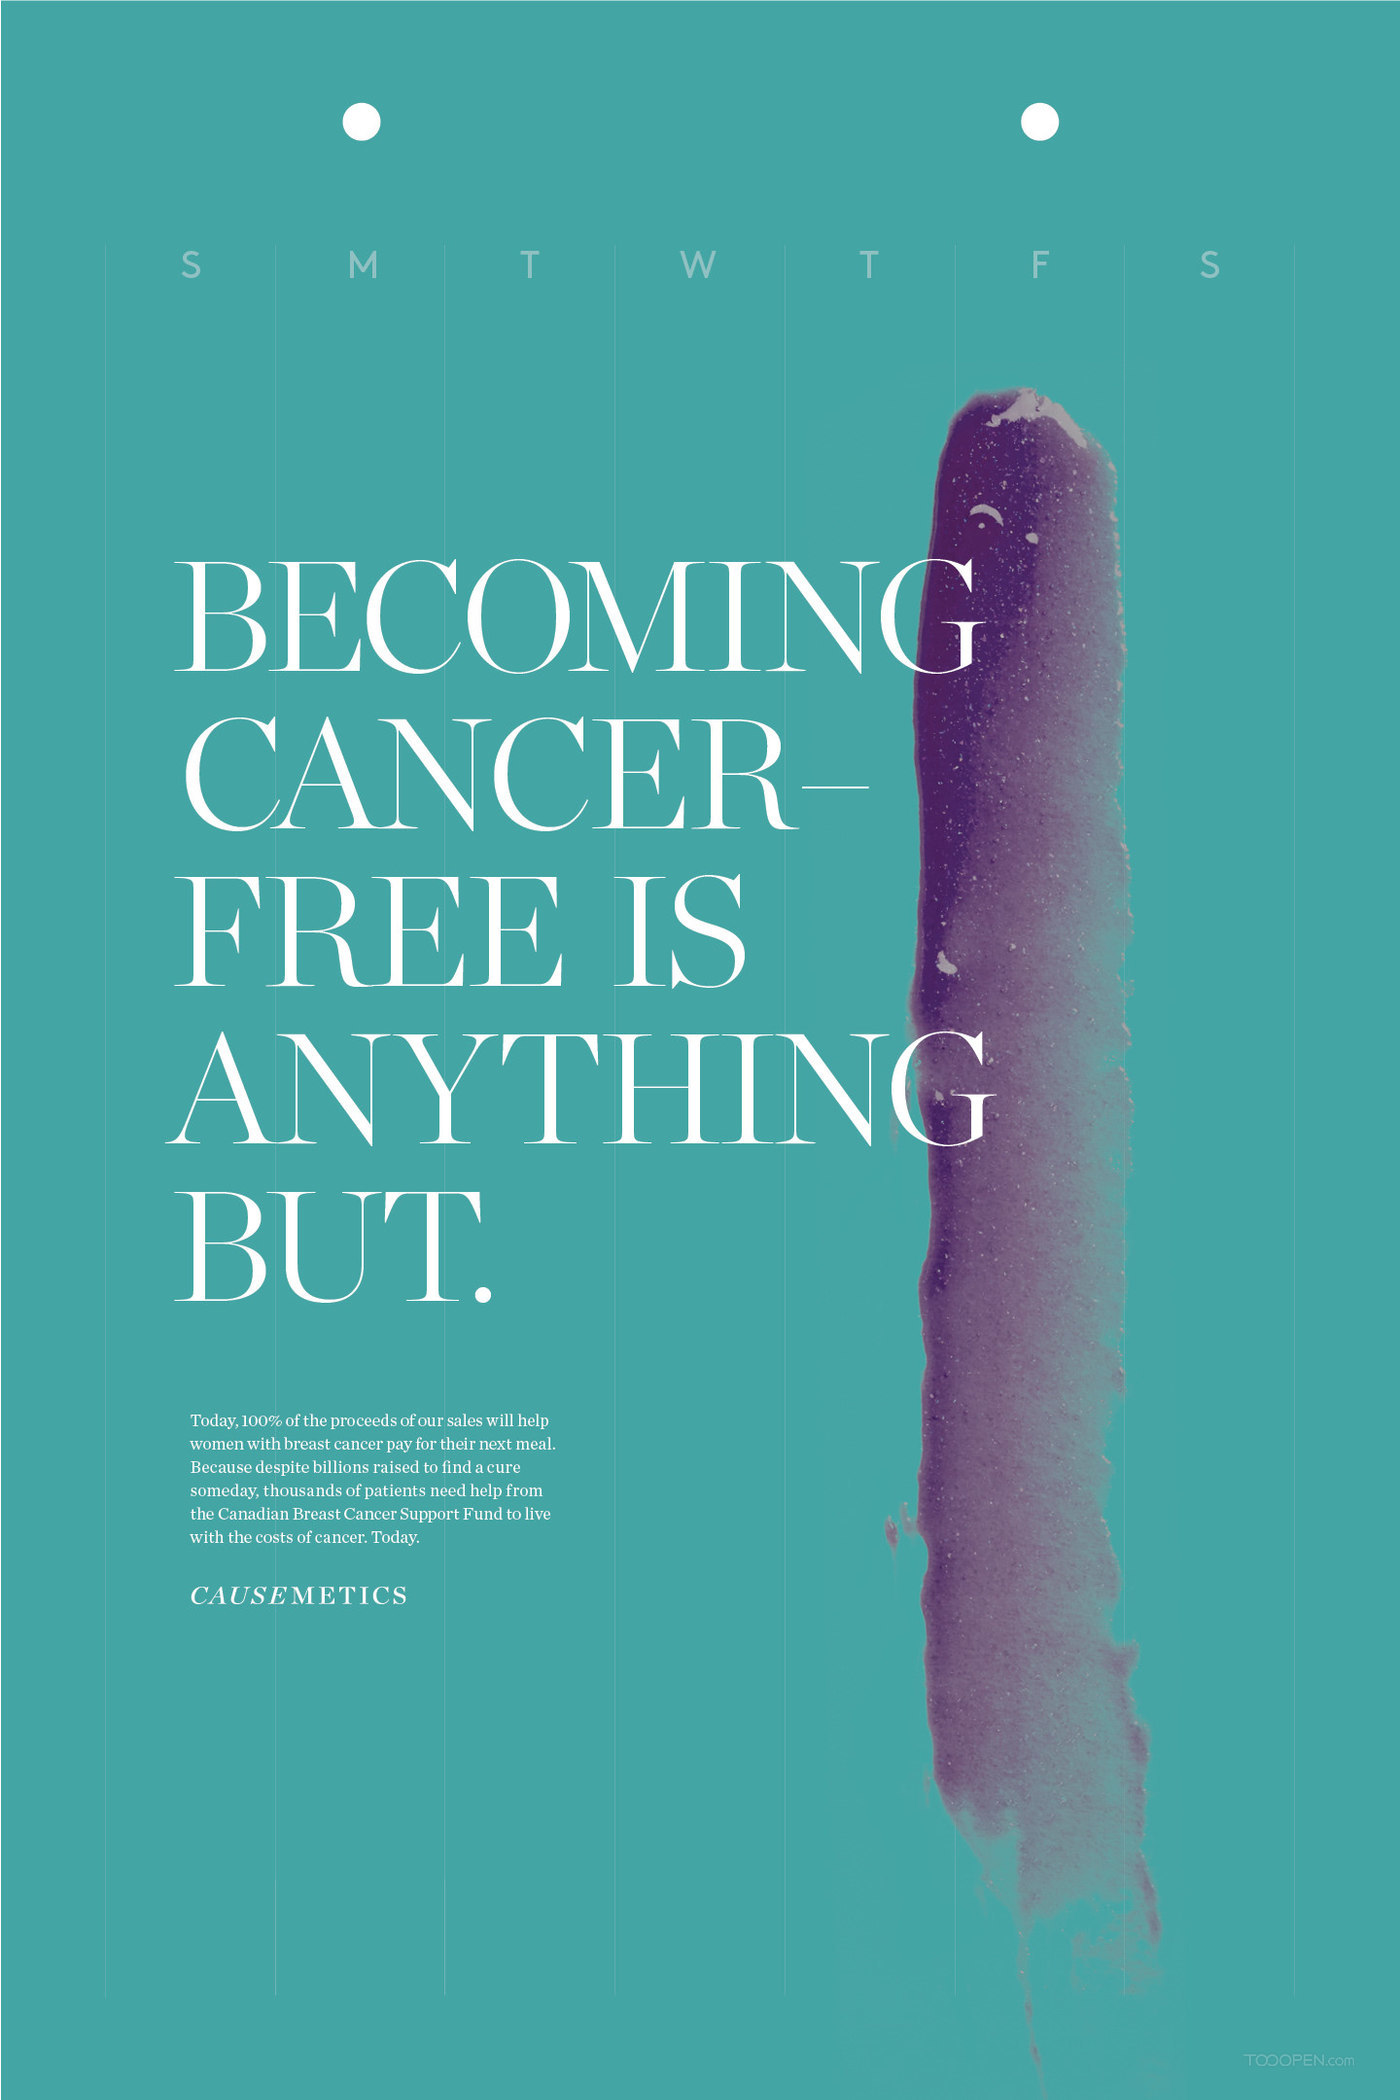 国外抗癌组织公益广告海报作品欣赏-06